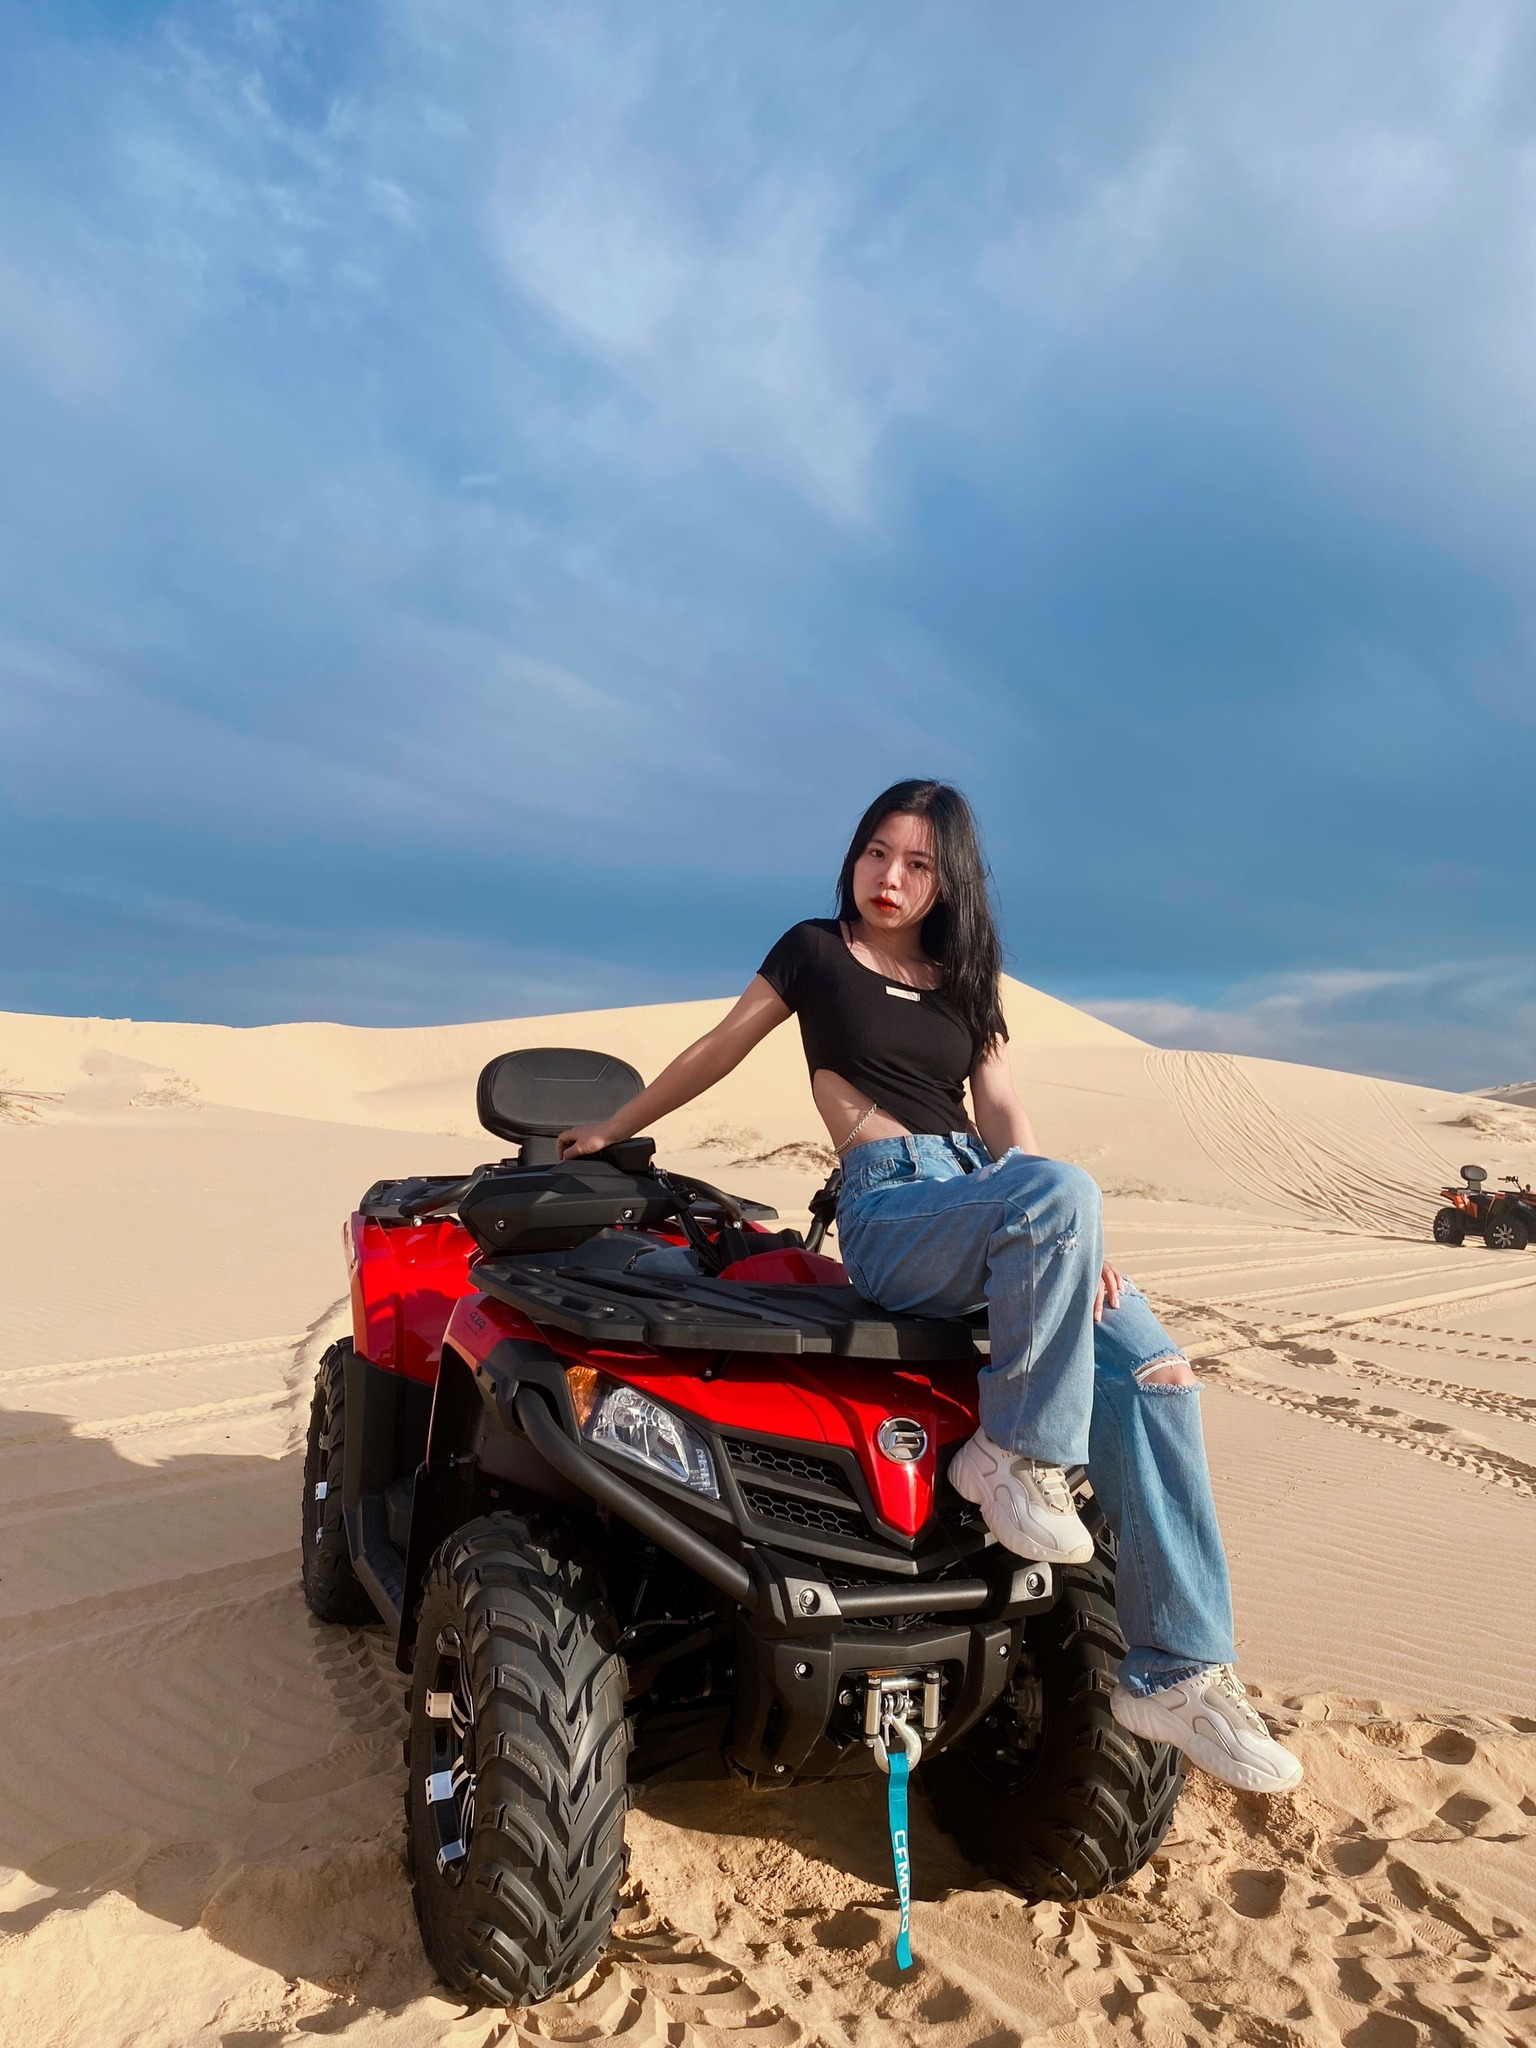 Xe Moto ATV trên đồi cát